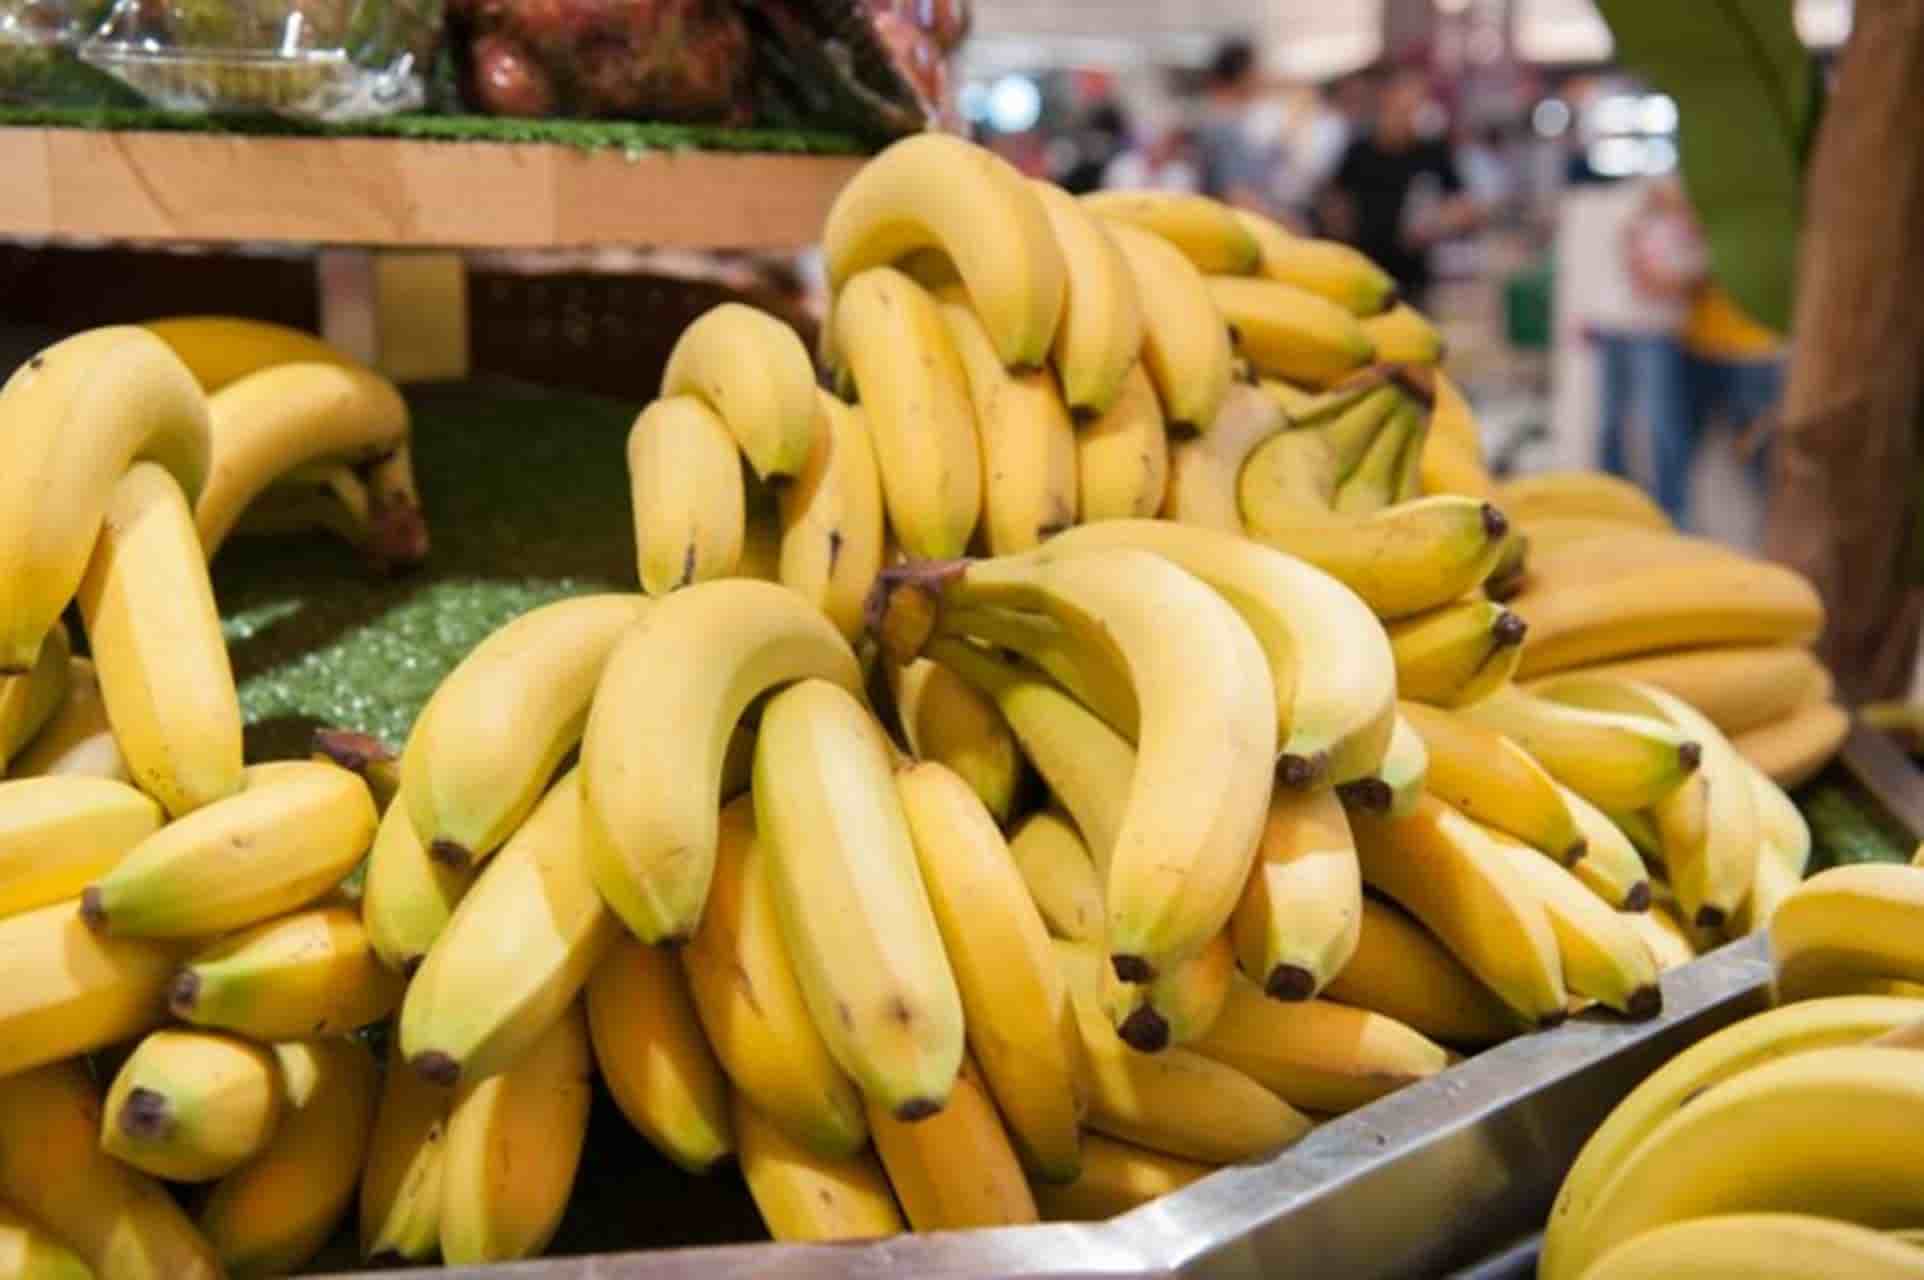 Truque eficaz para amadurecer bananas verdes mais rápido: funciona!